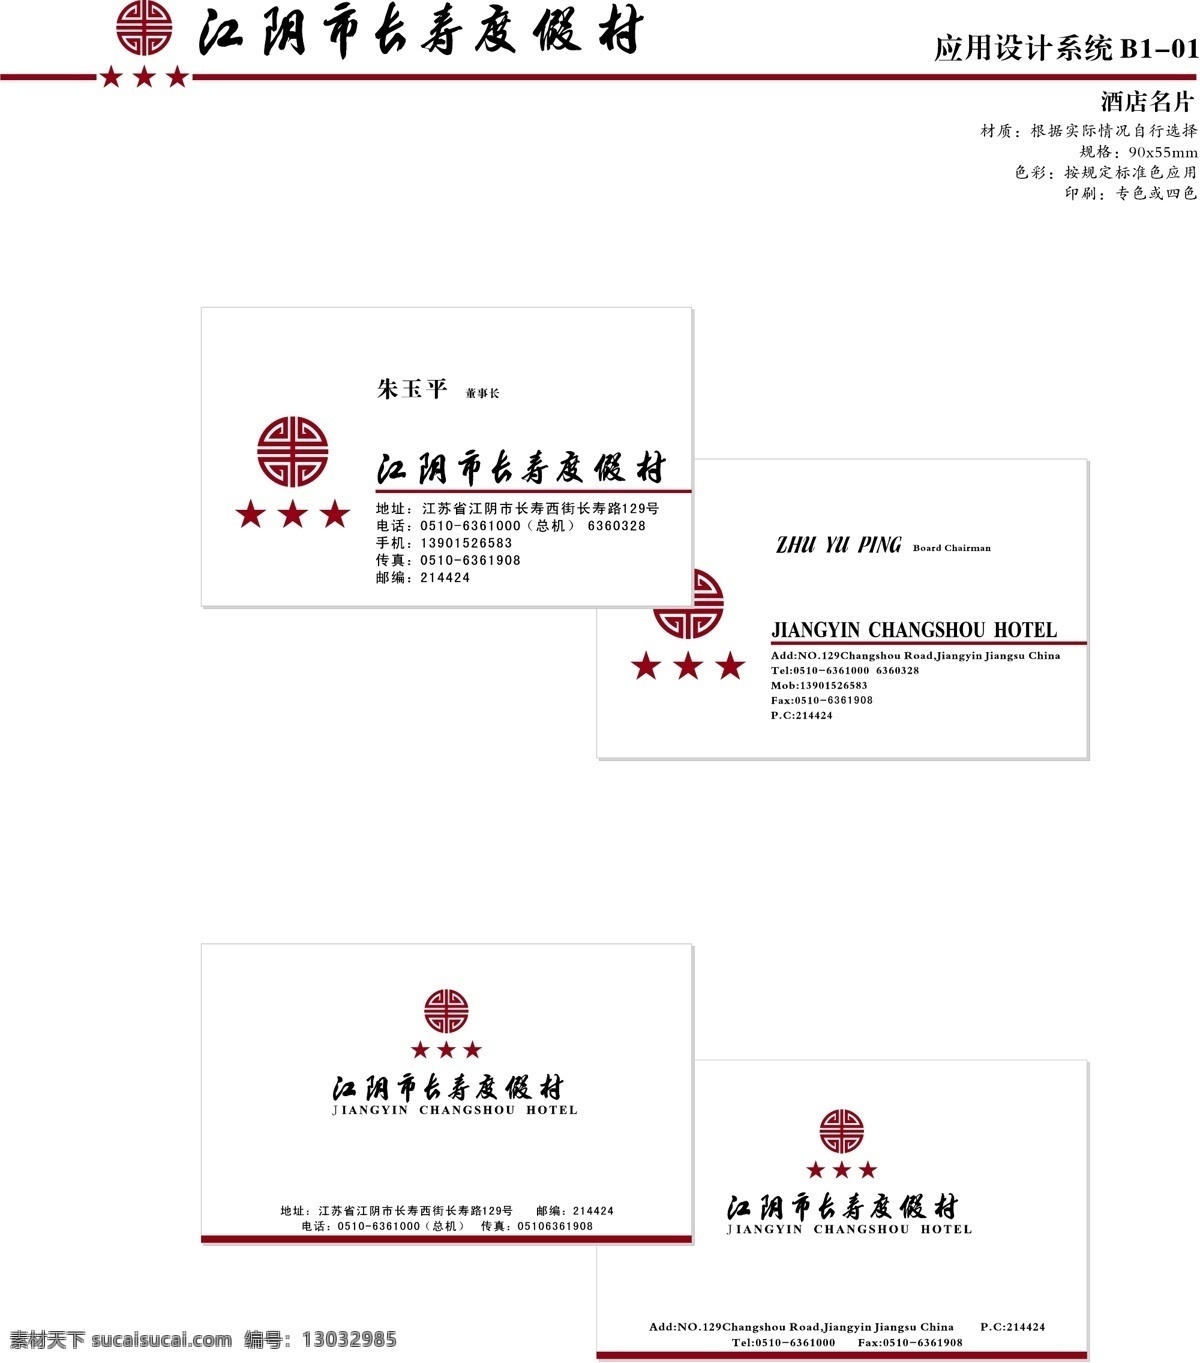 江阴 长寿 渡假村 vi vi设计 矢量 文件 宝典 应用系统 b1 海报 其他海报设计